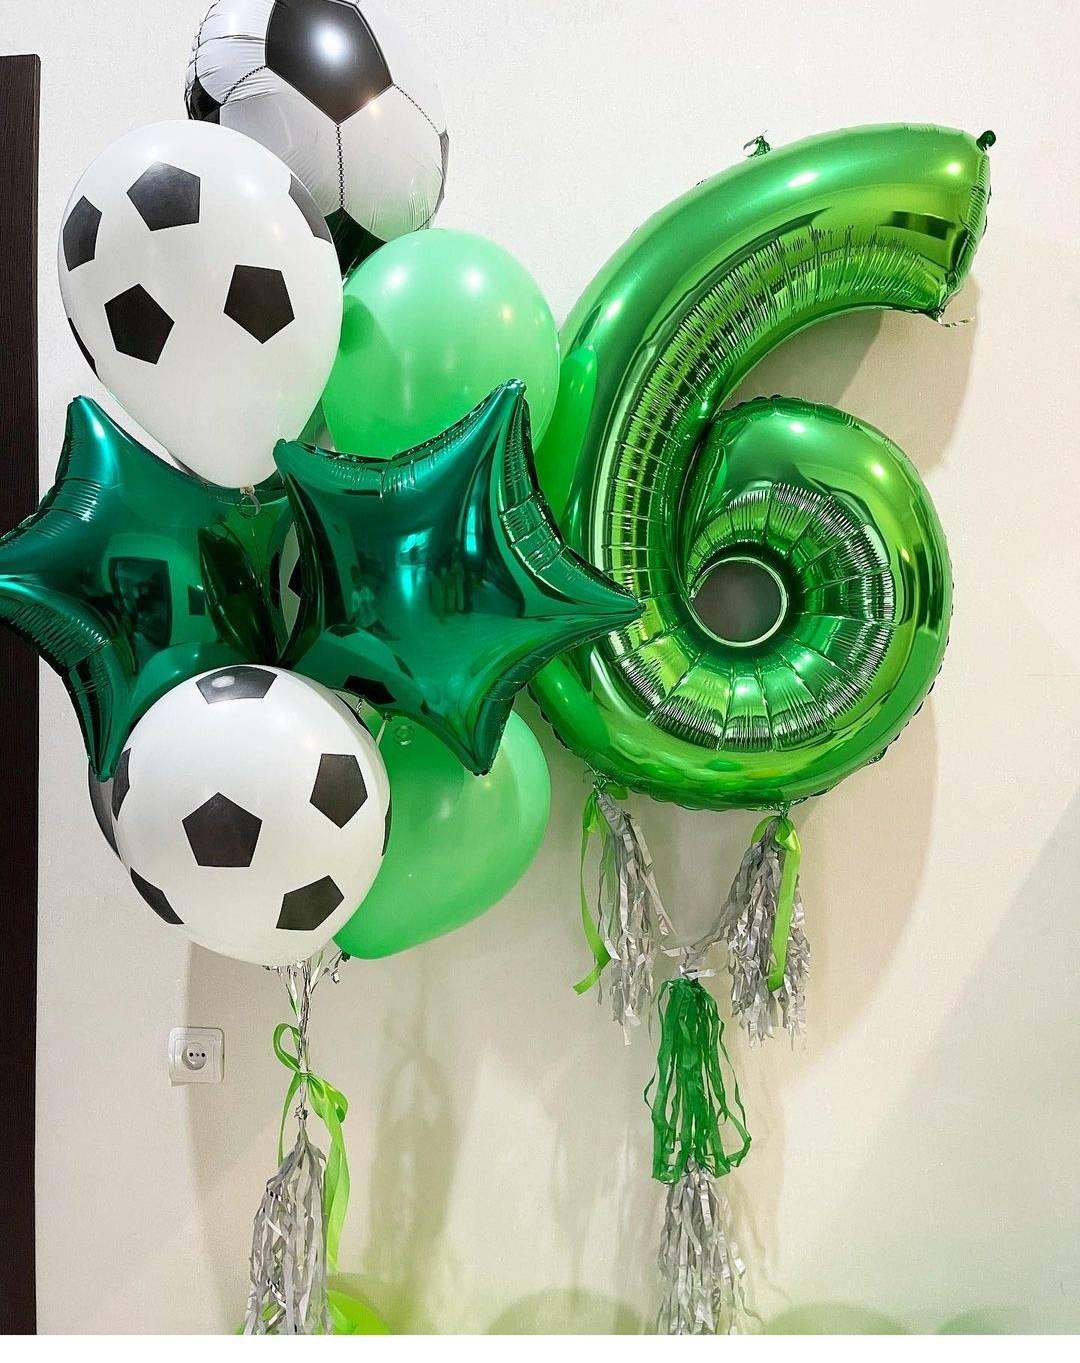 зеленые шары на 6 лет для мальчика в футбольном стиле